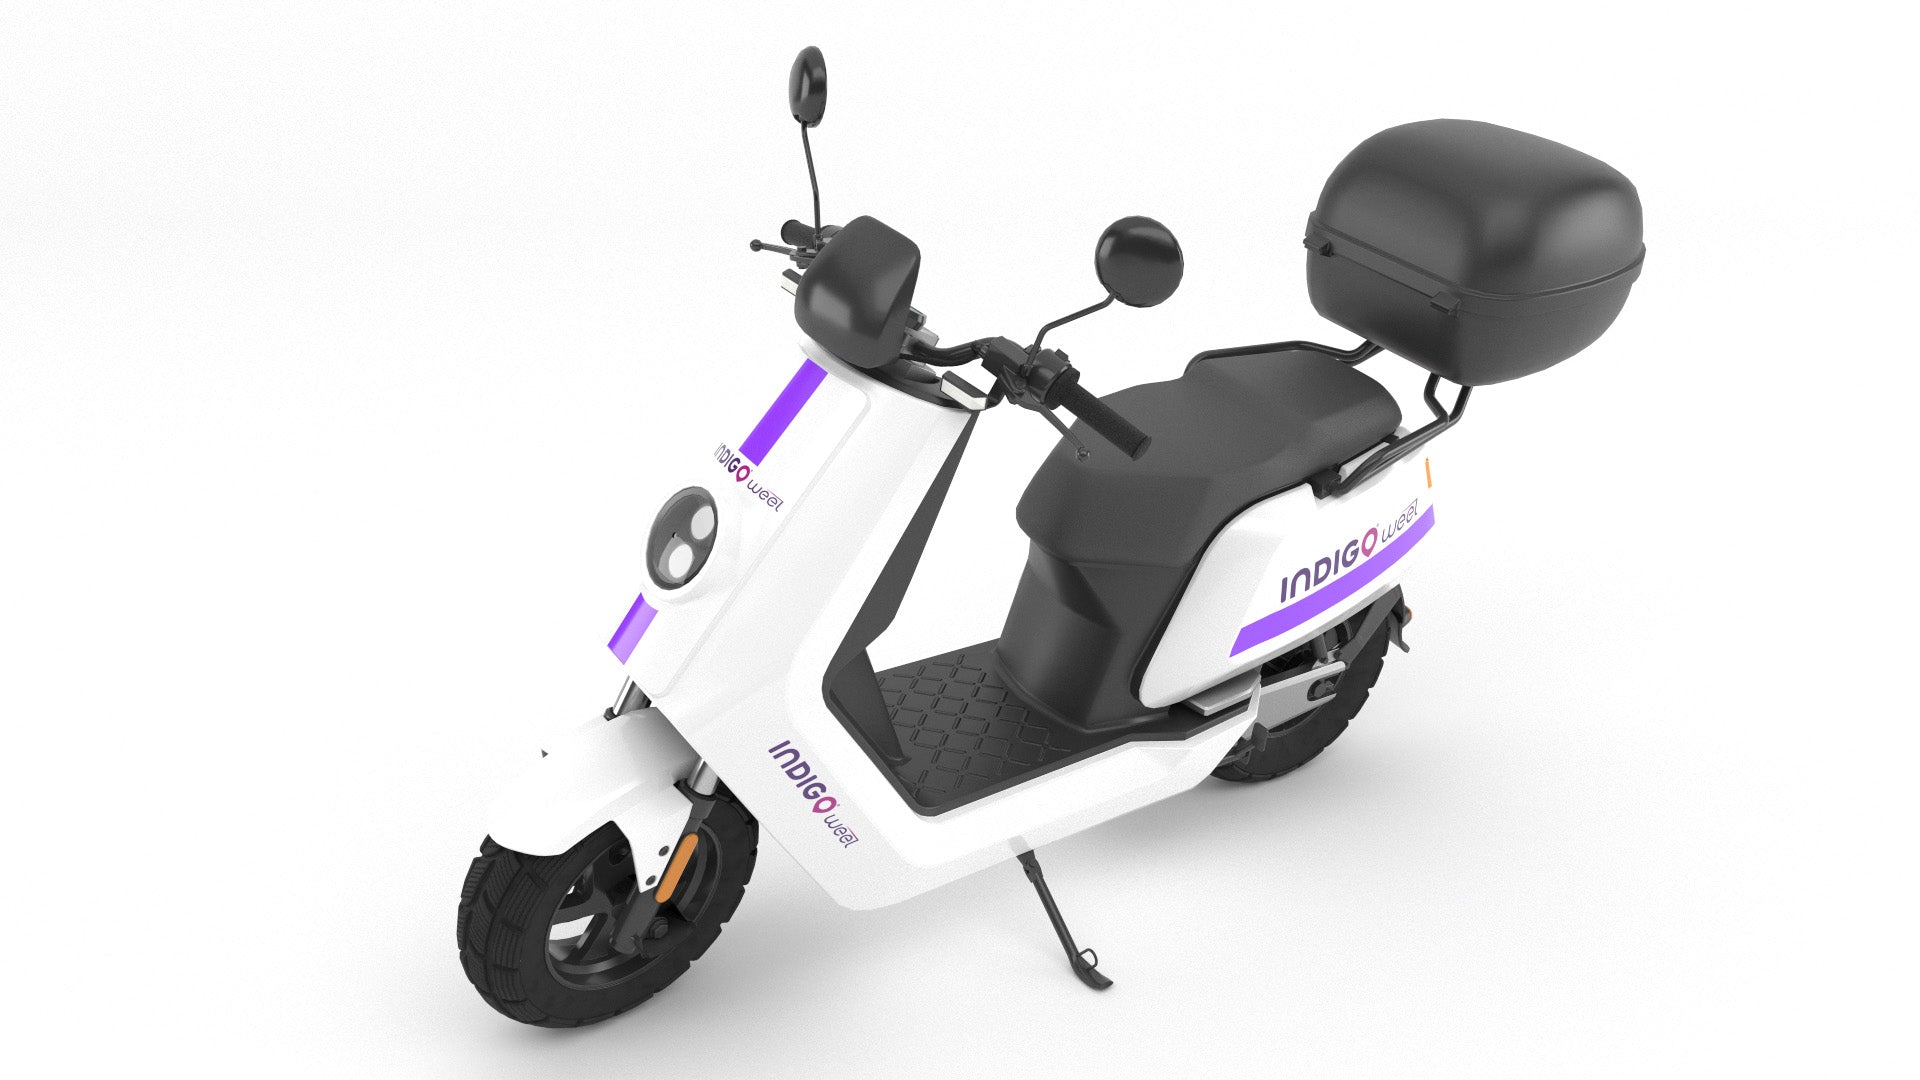 Indigo weel scooter 3d model